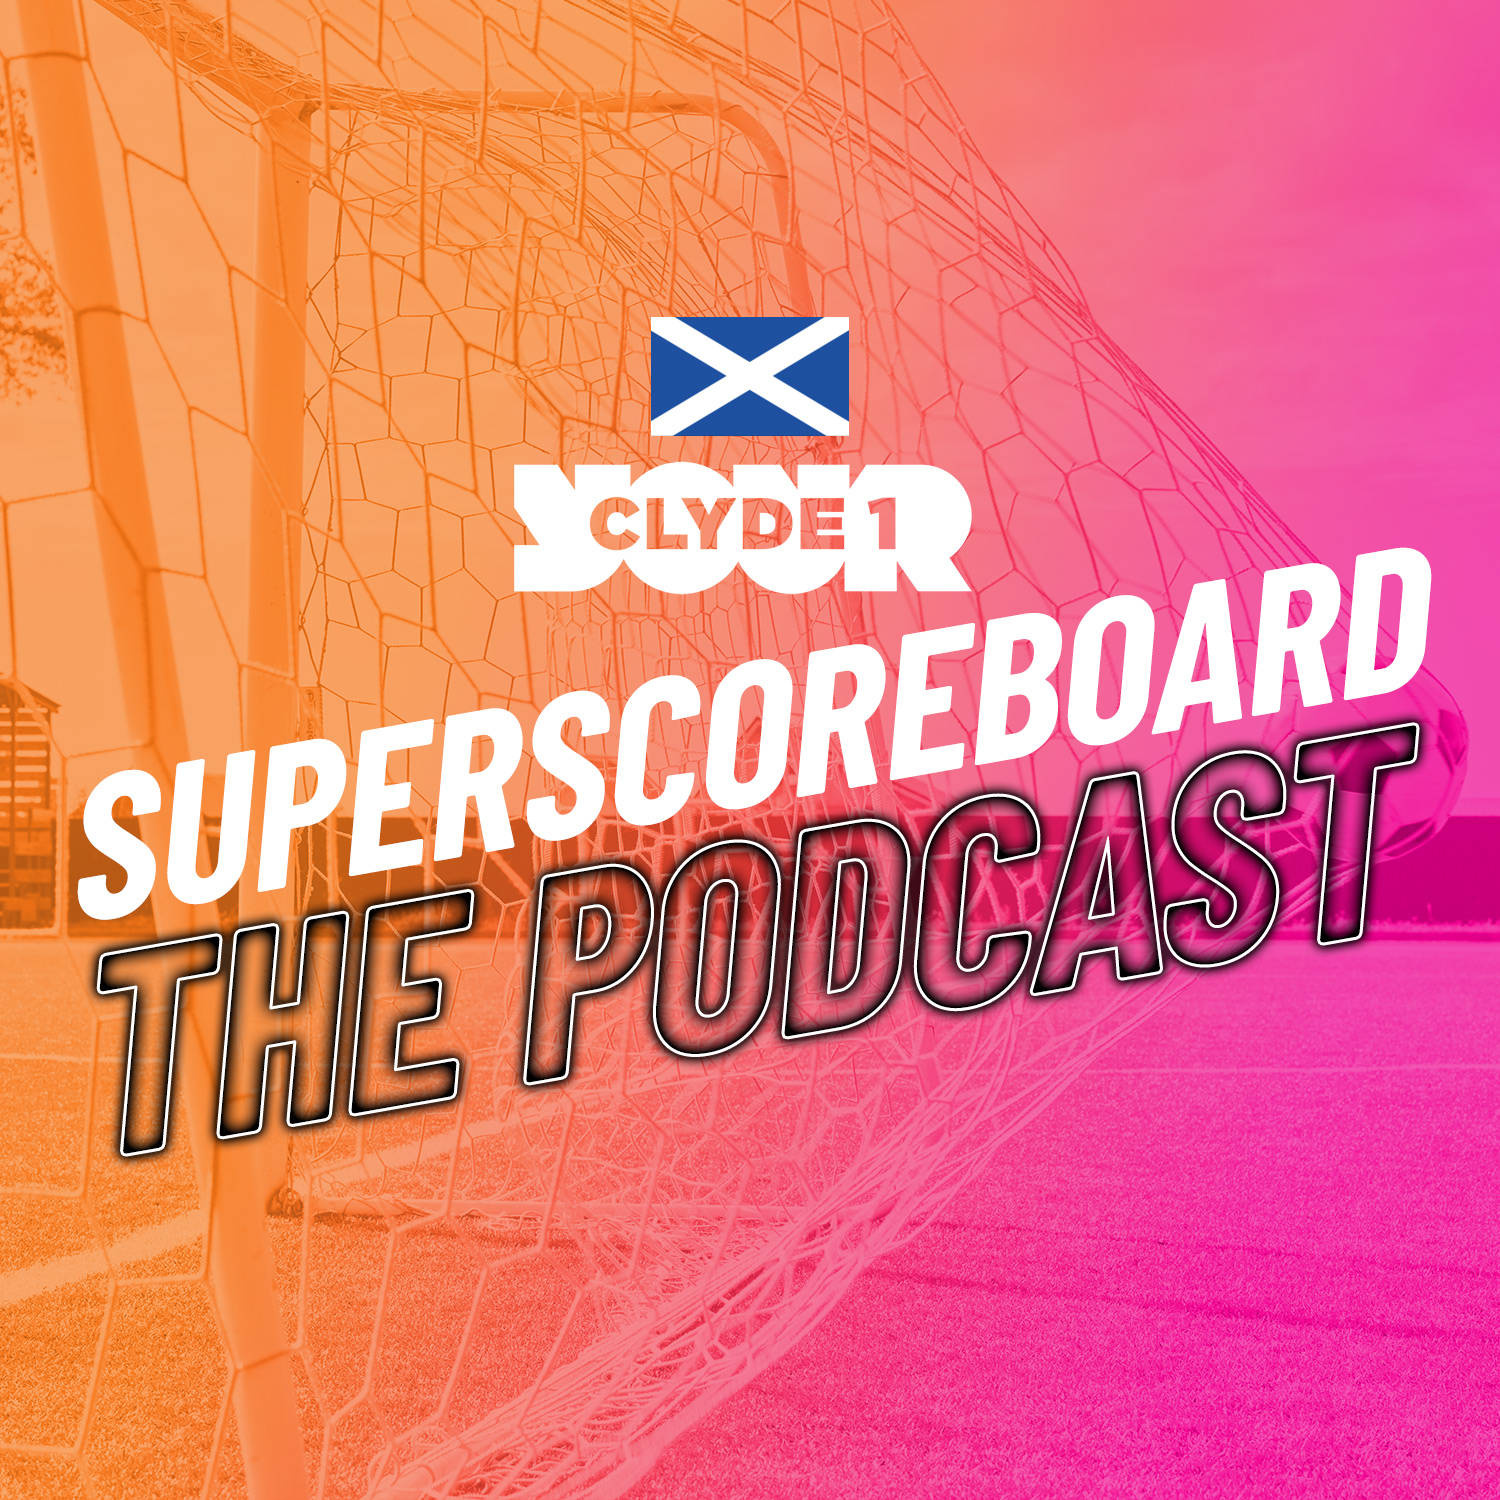 Sunday 17th December Clyde 1 Superscoreboard – Part 2